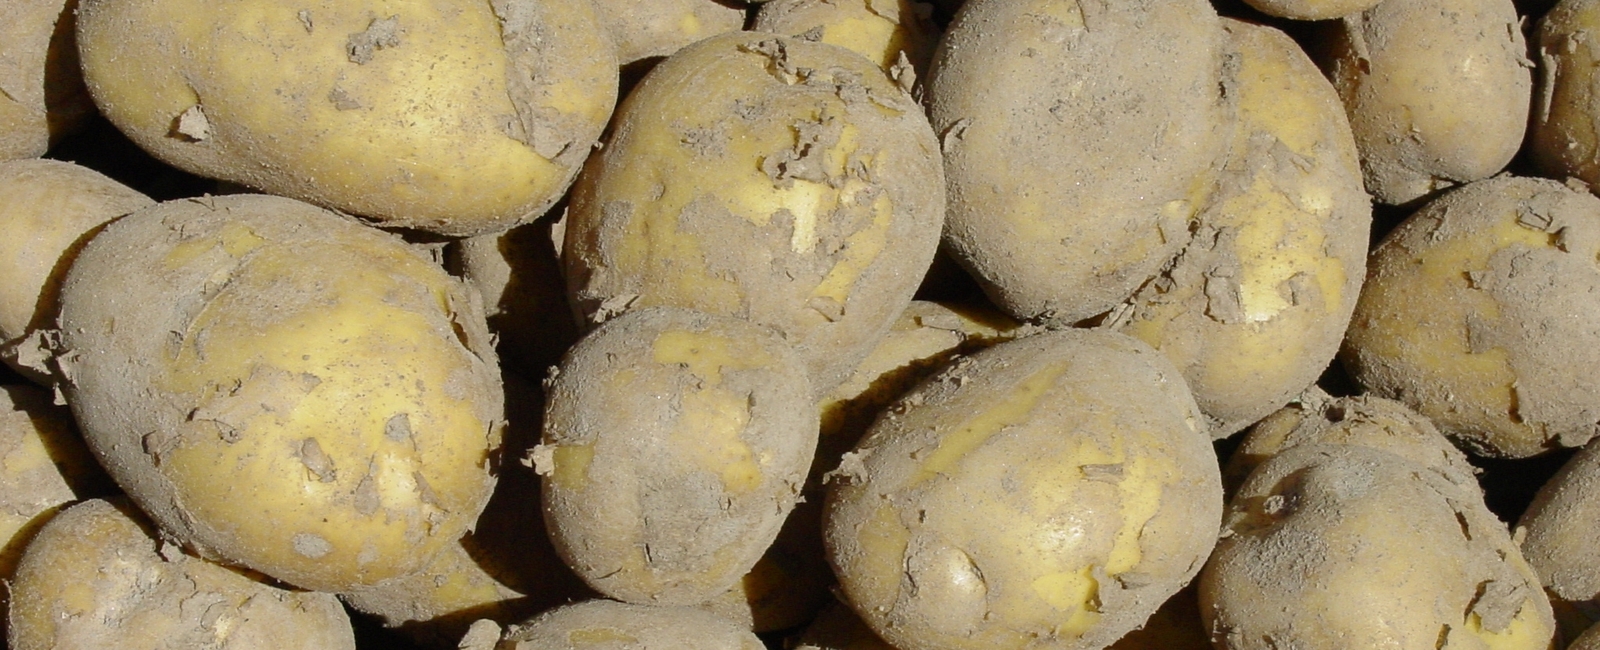 Reducir manchas internas en la patata